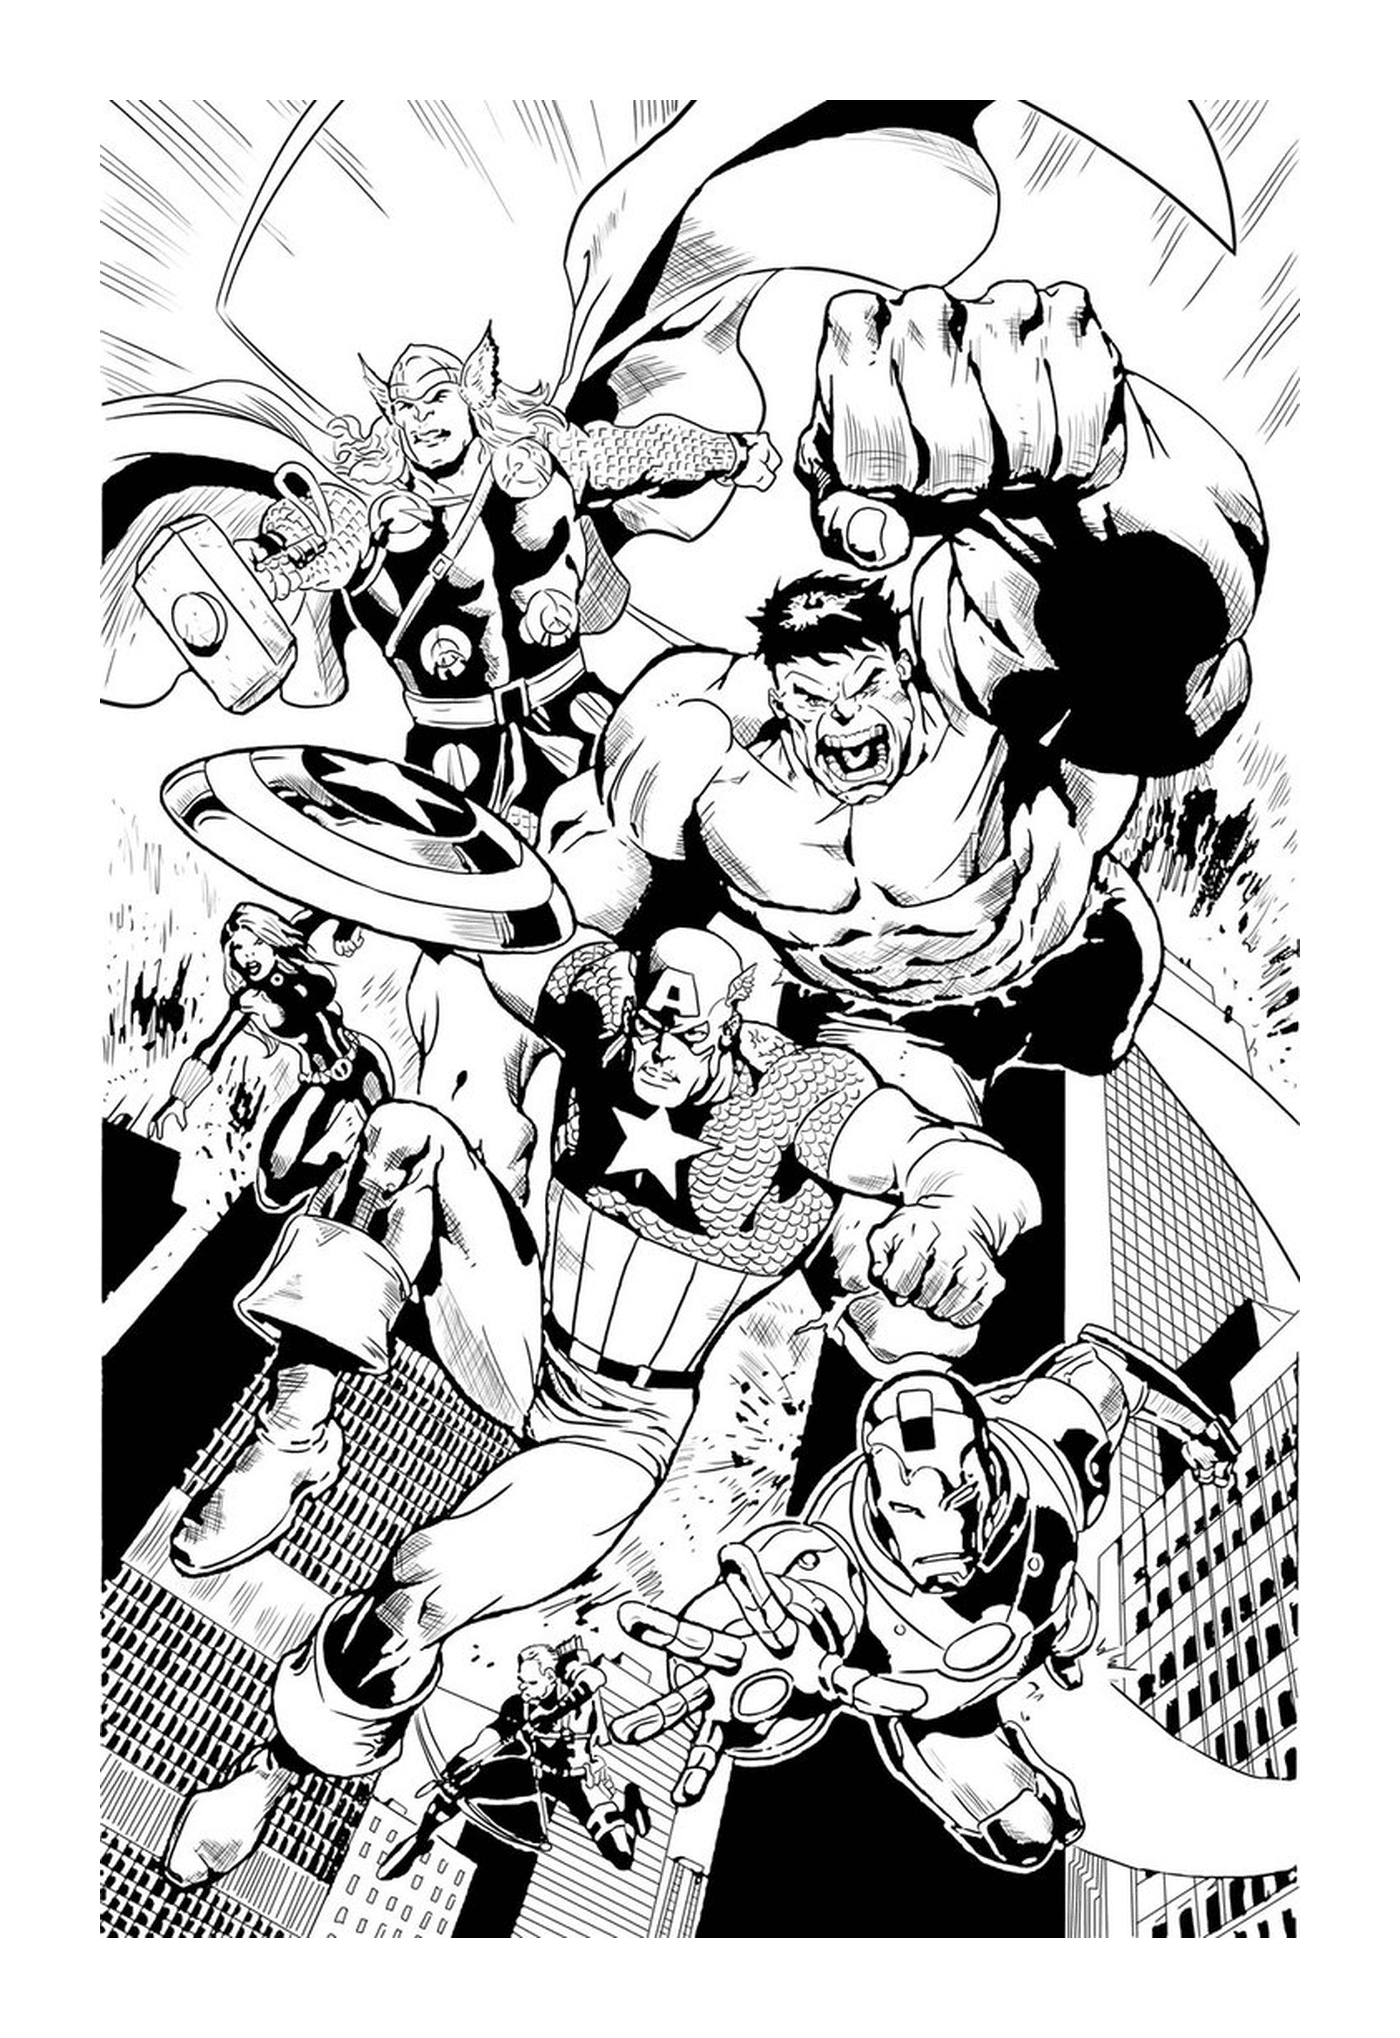   Un groupe de super-héros en noir et blanc 